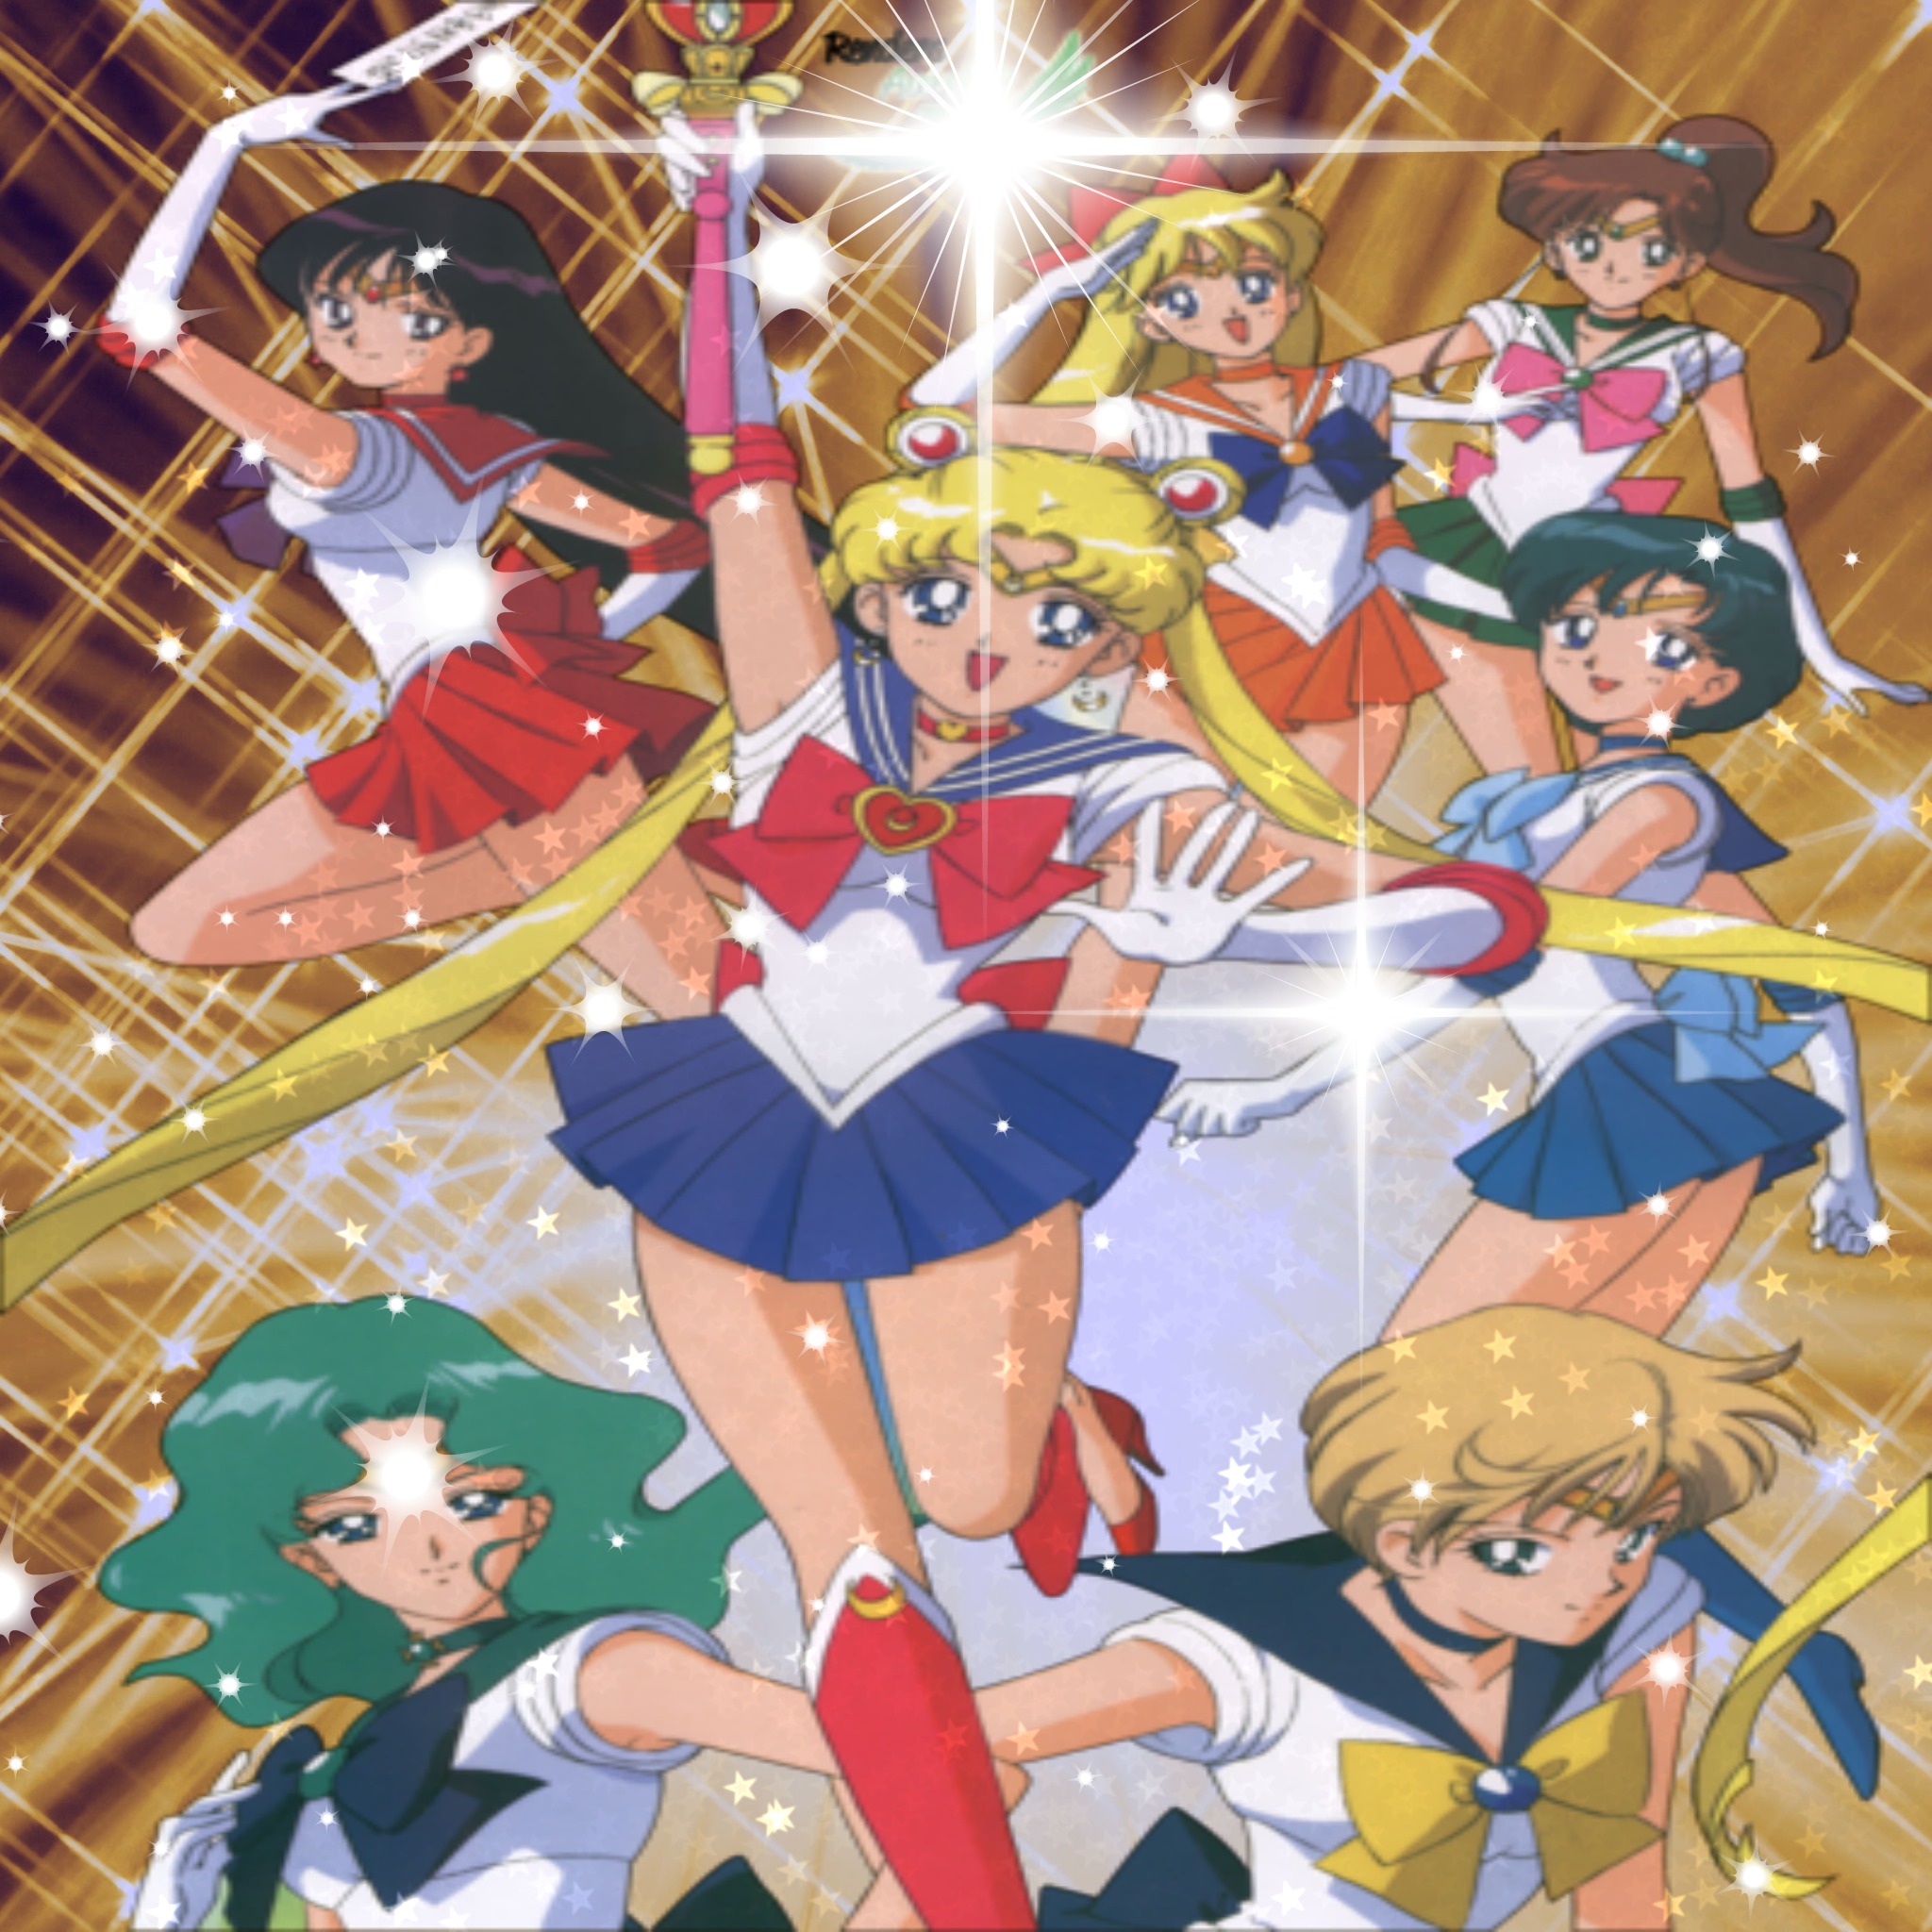 Sailor moon Bokeh style (diffe